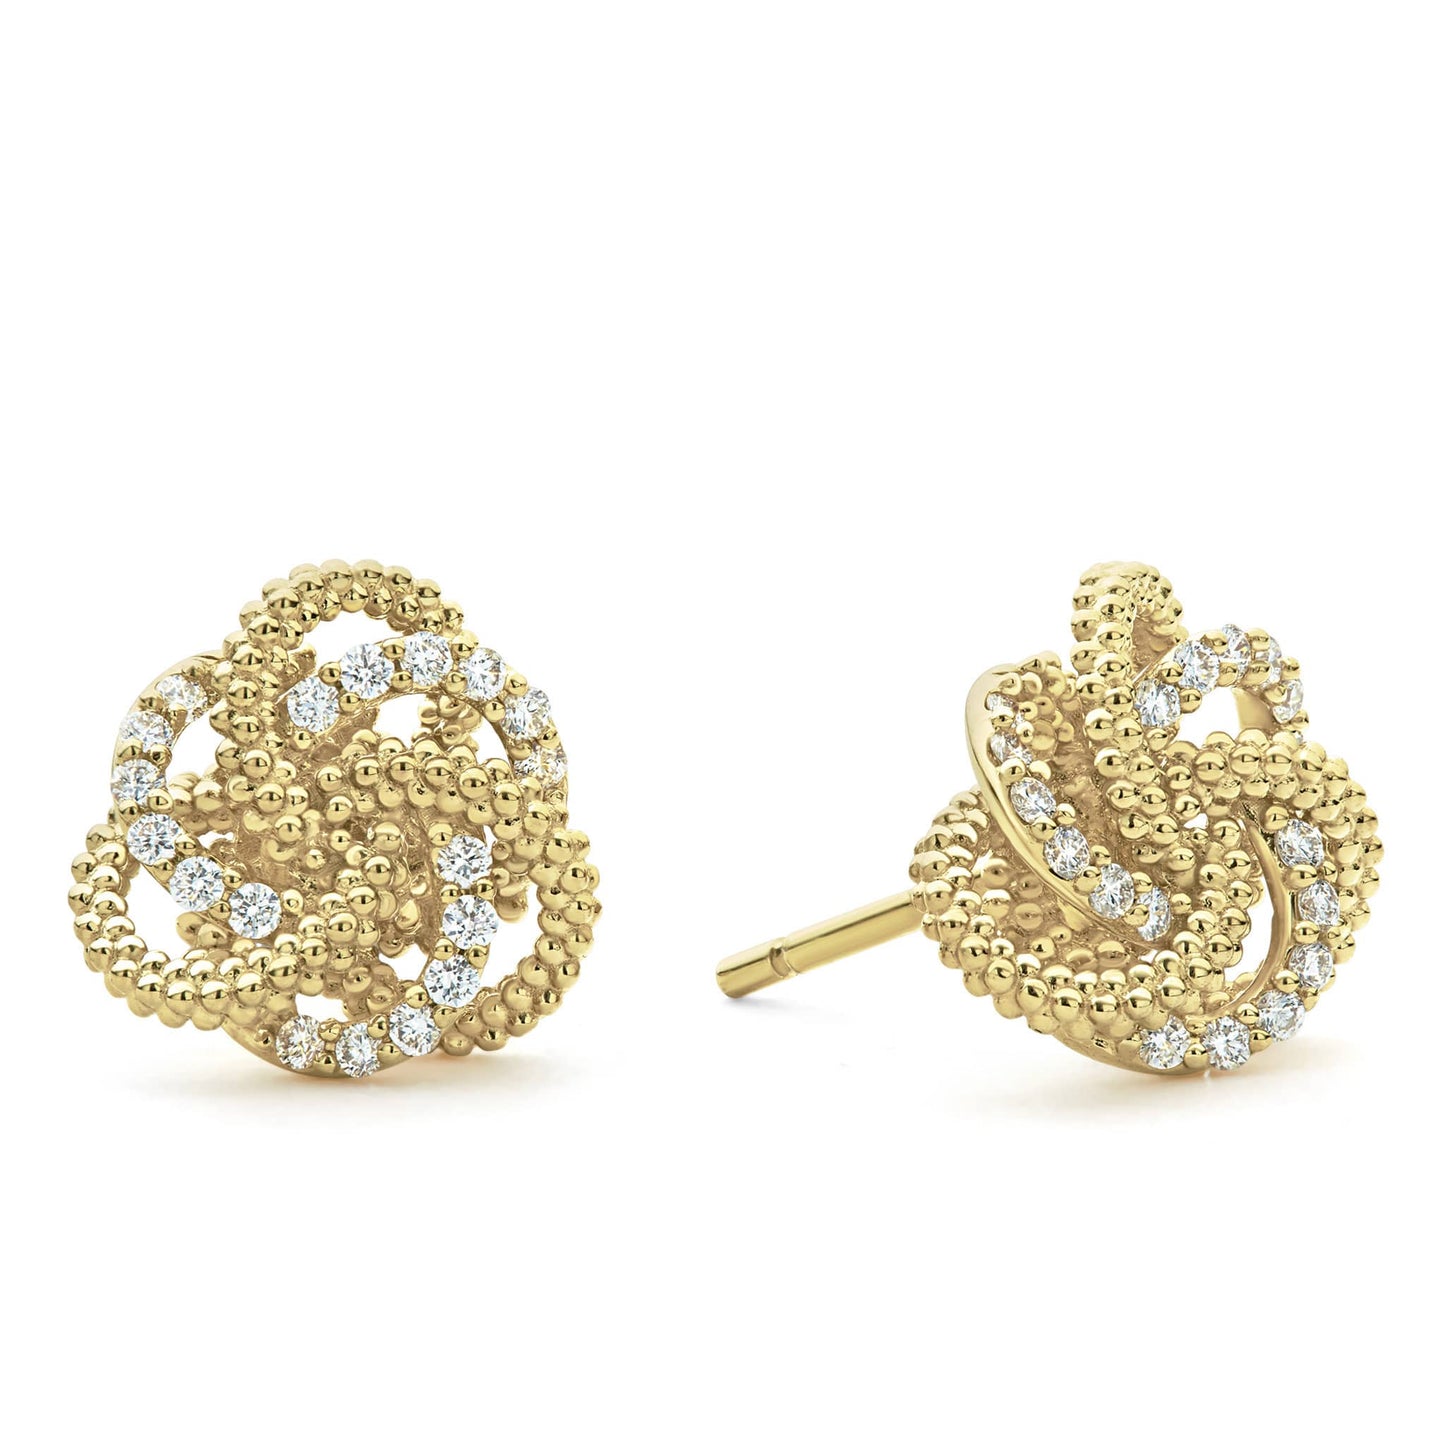 Lagos 18k Gold Love Knot Diamond Earrings